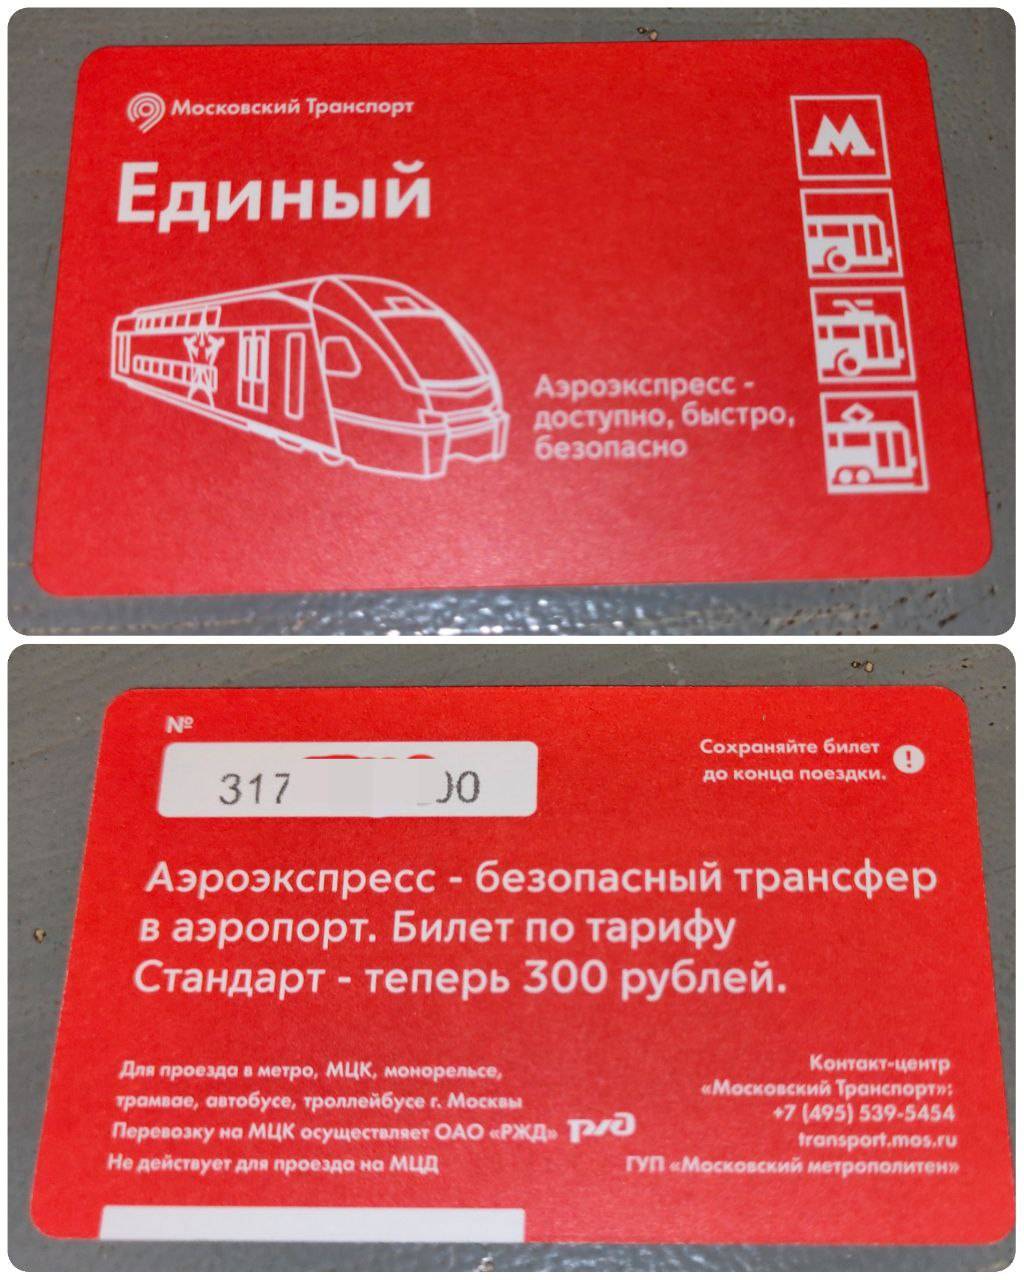 Аэроэкспресс карта москвича. Аэроэкспресс карта. Карта тройка Аэроэкспресс. Билет единый Аэроэкспресс. Электронный билет на Аэроэкспресс.